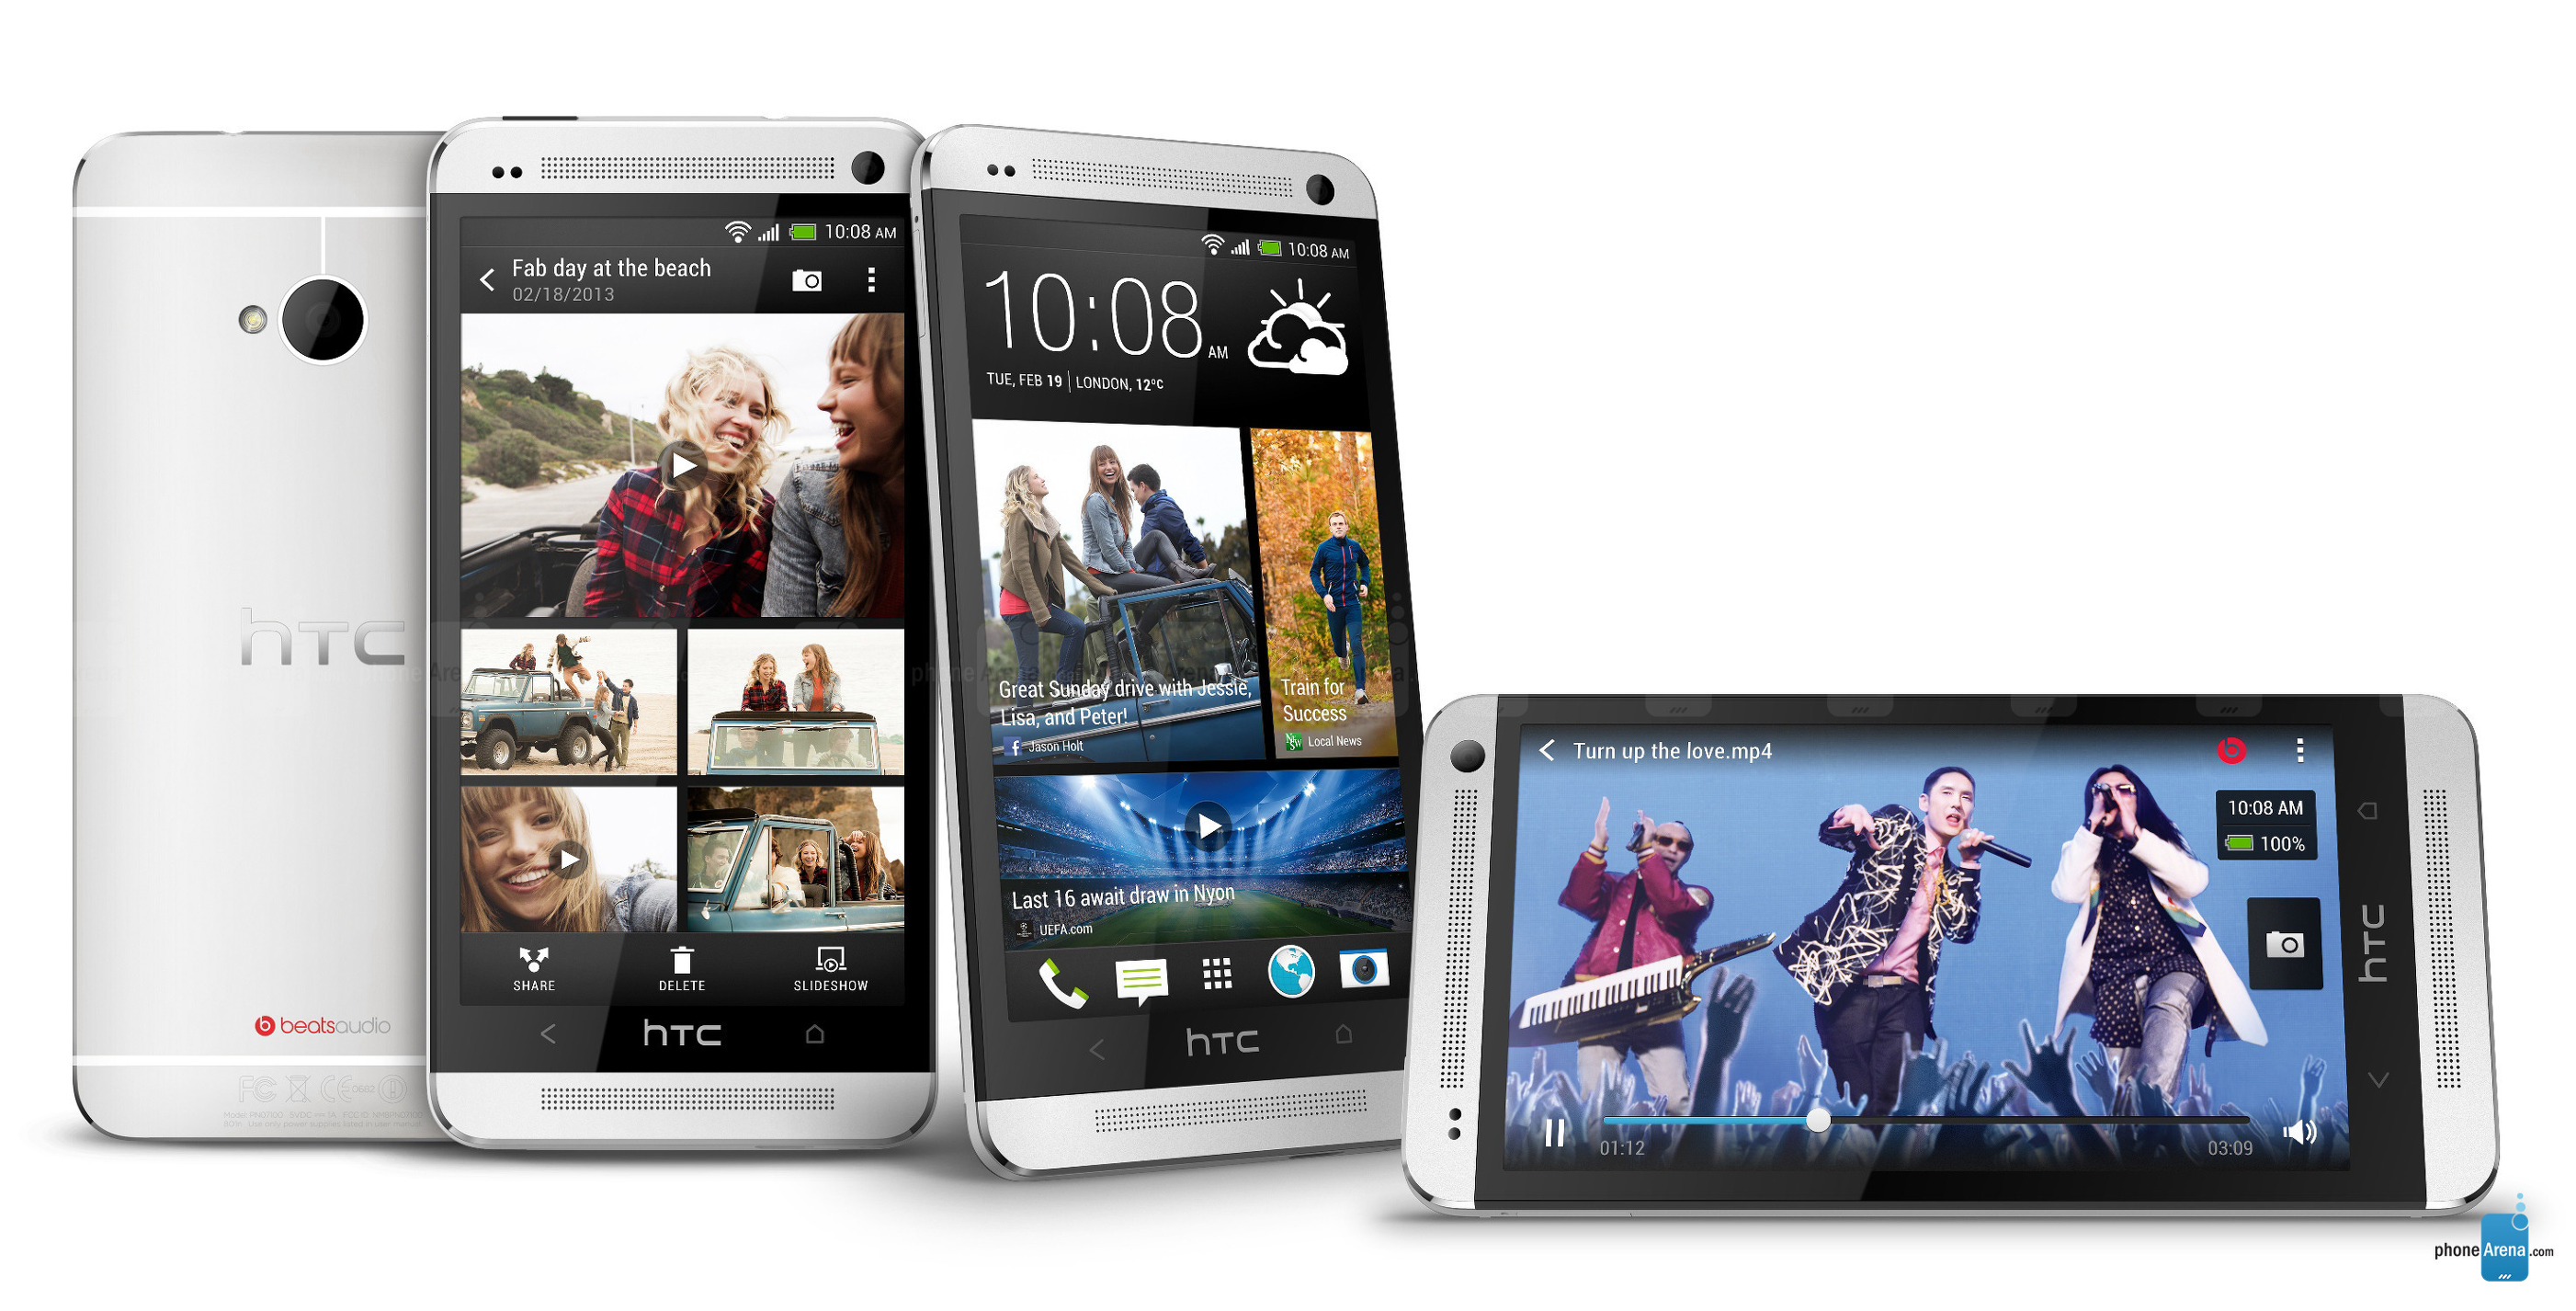 經典回望-上品金属材料,极致之作-HTC One M7